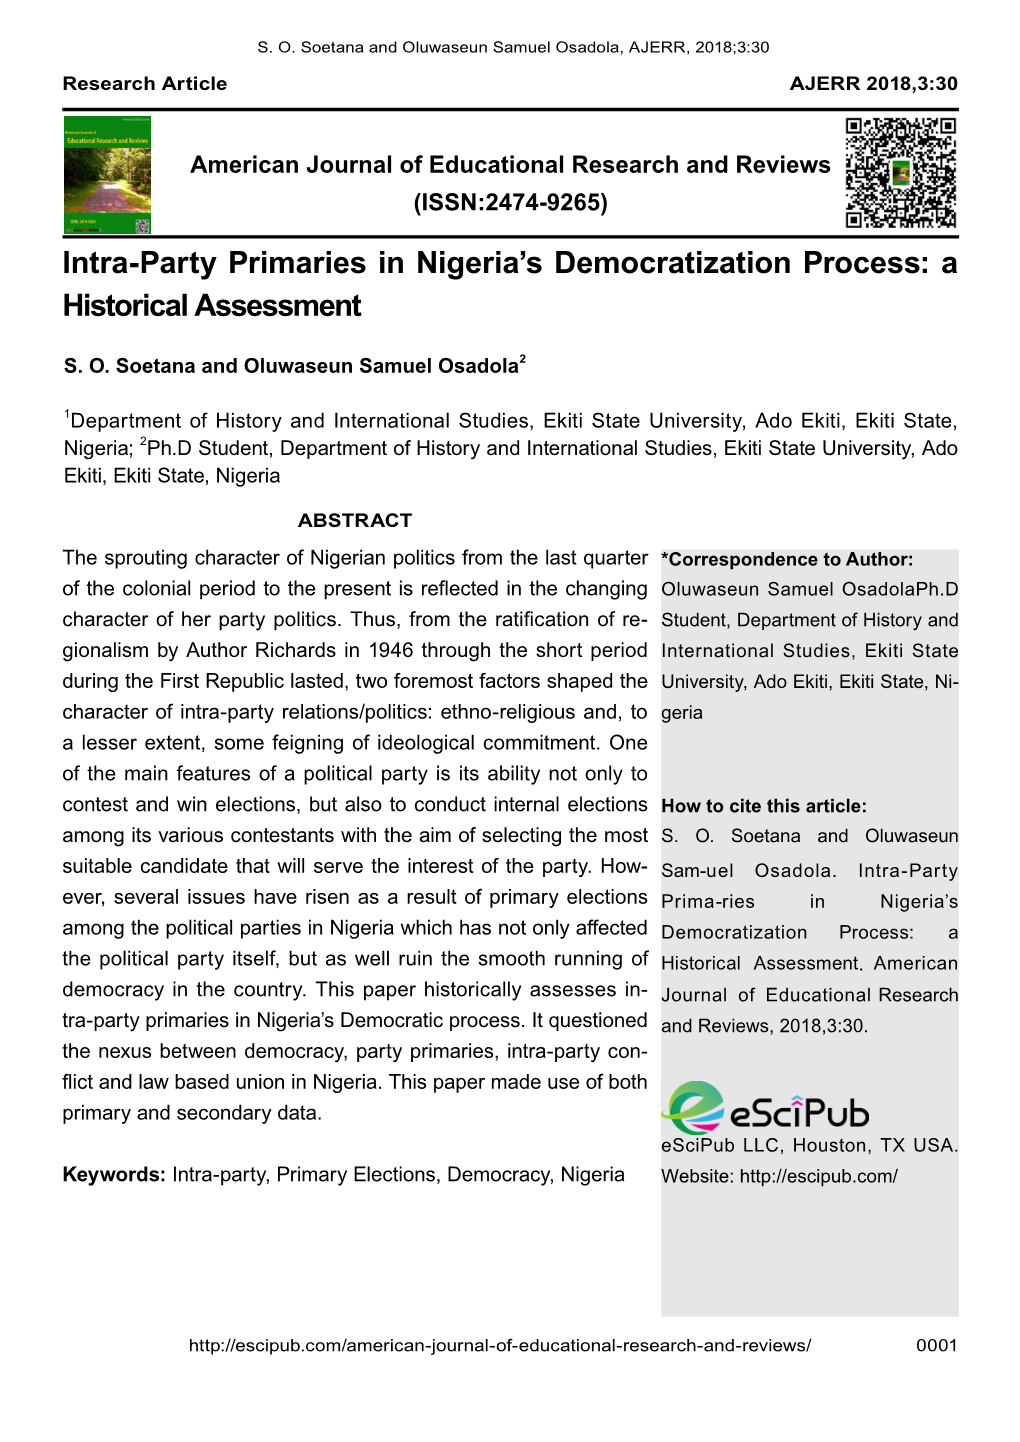 Intra-Party Primaries in Nigeria's Democratization Process